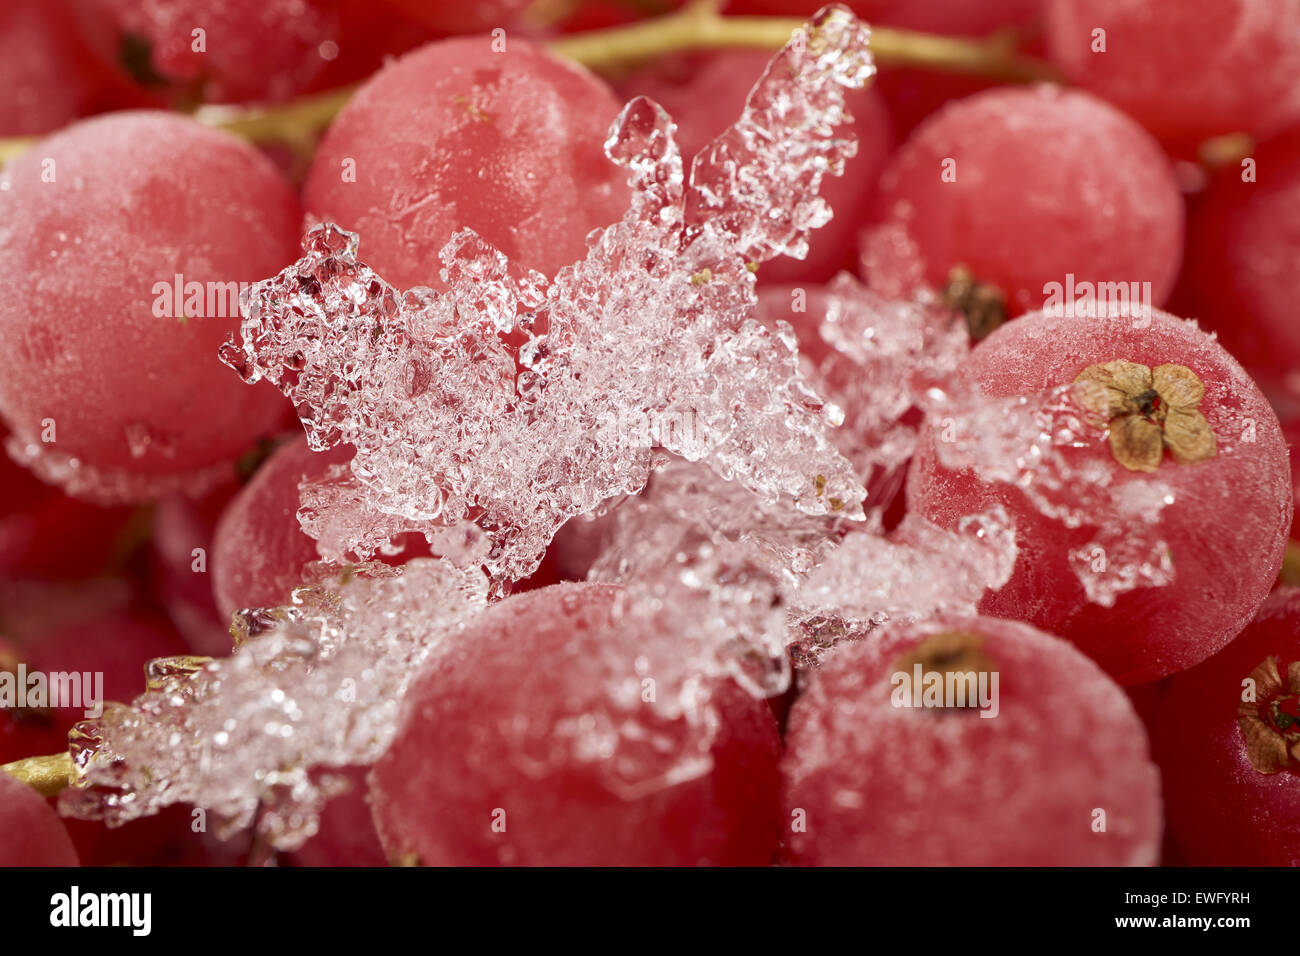 Contexte De nombreux groseilles congelées couvertes de cristaux de glace Banque D'Images